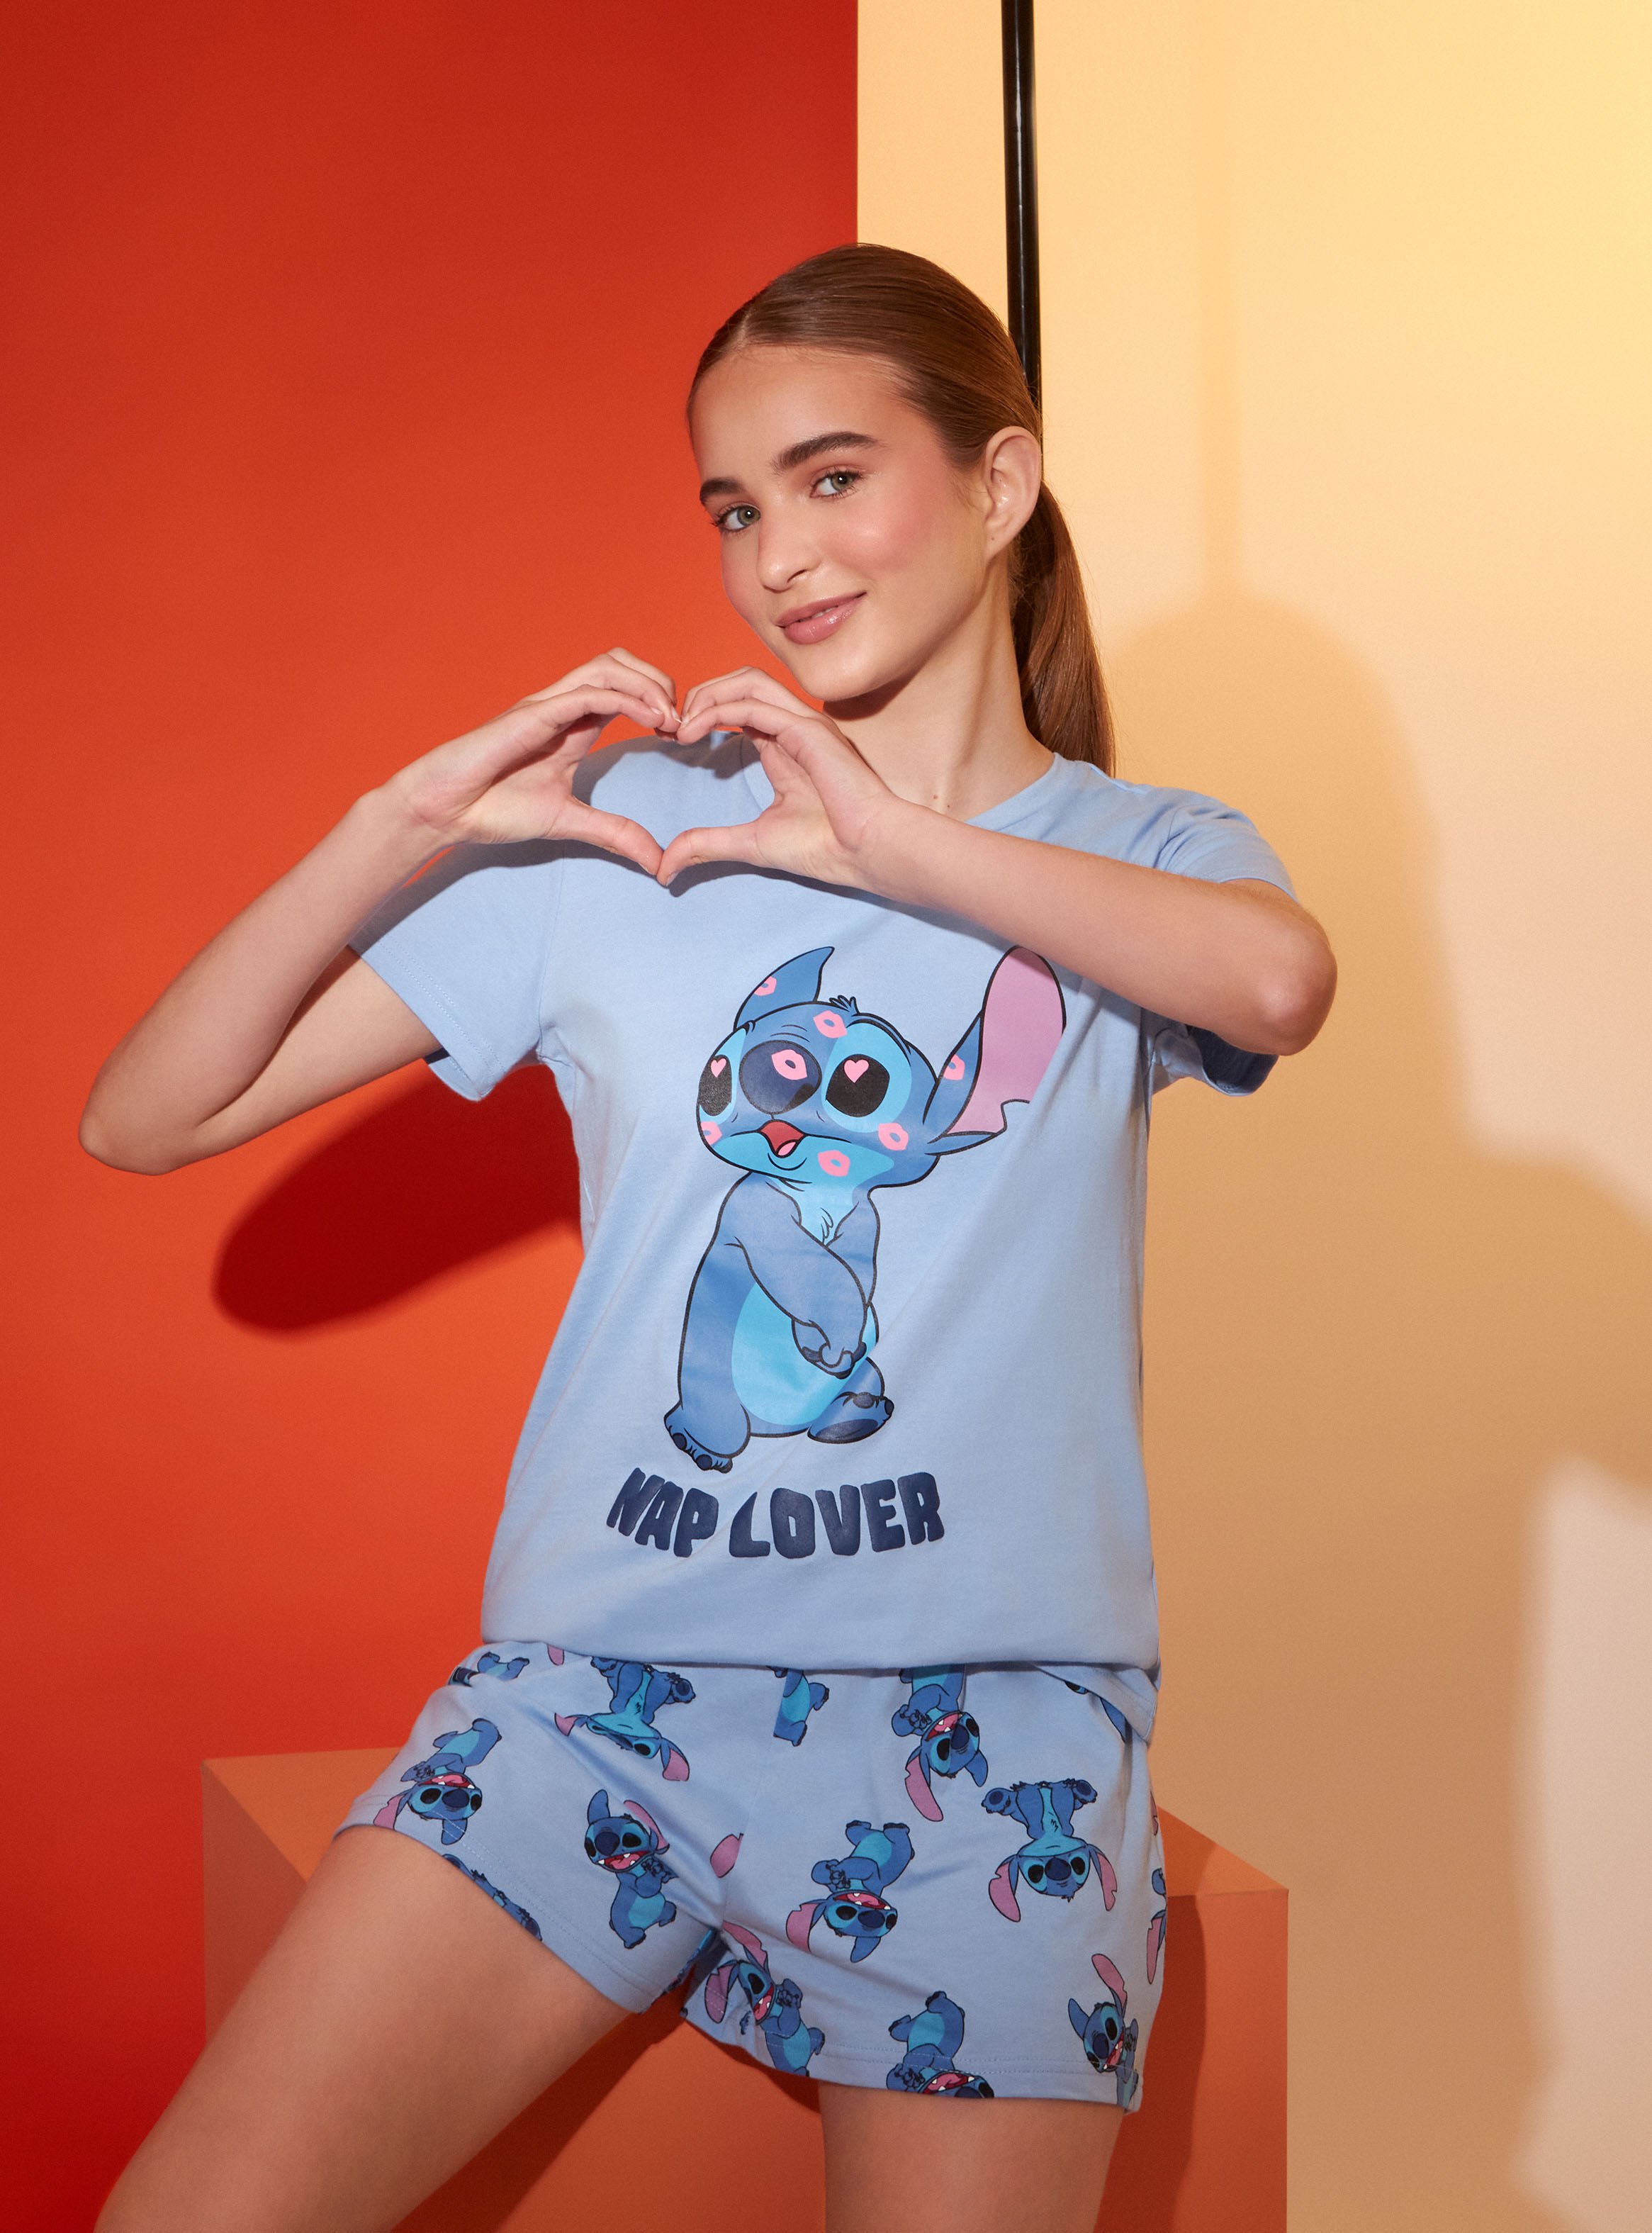 Pijama Lilo & stitch